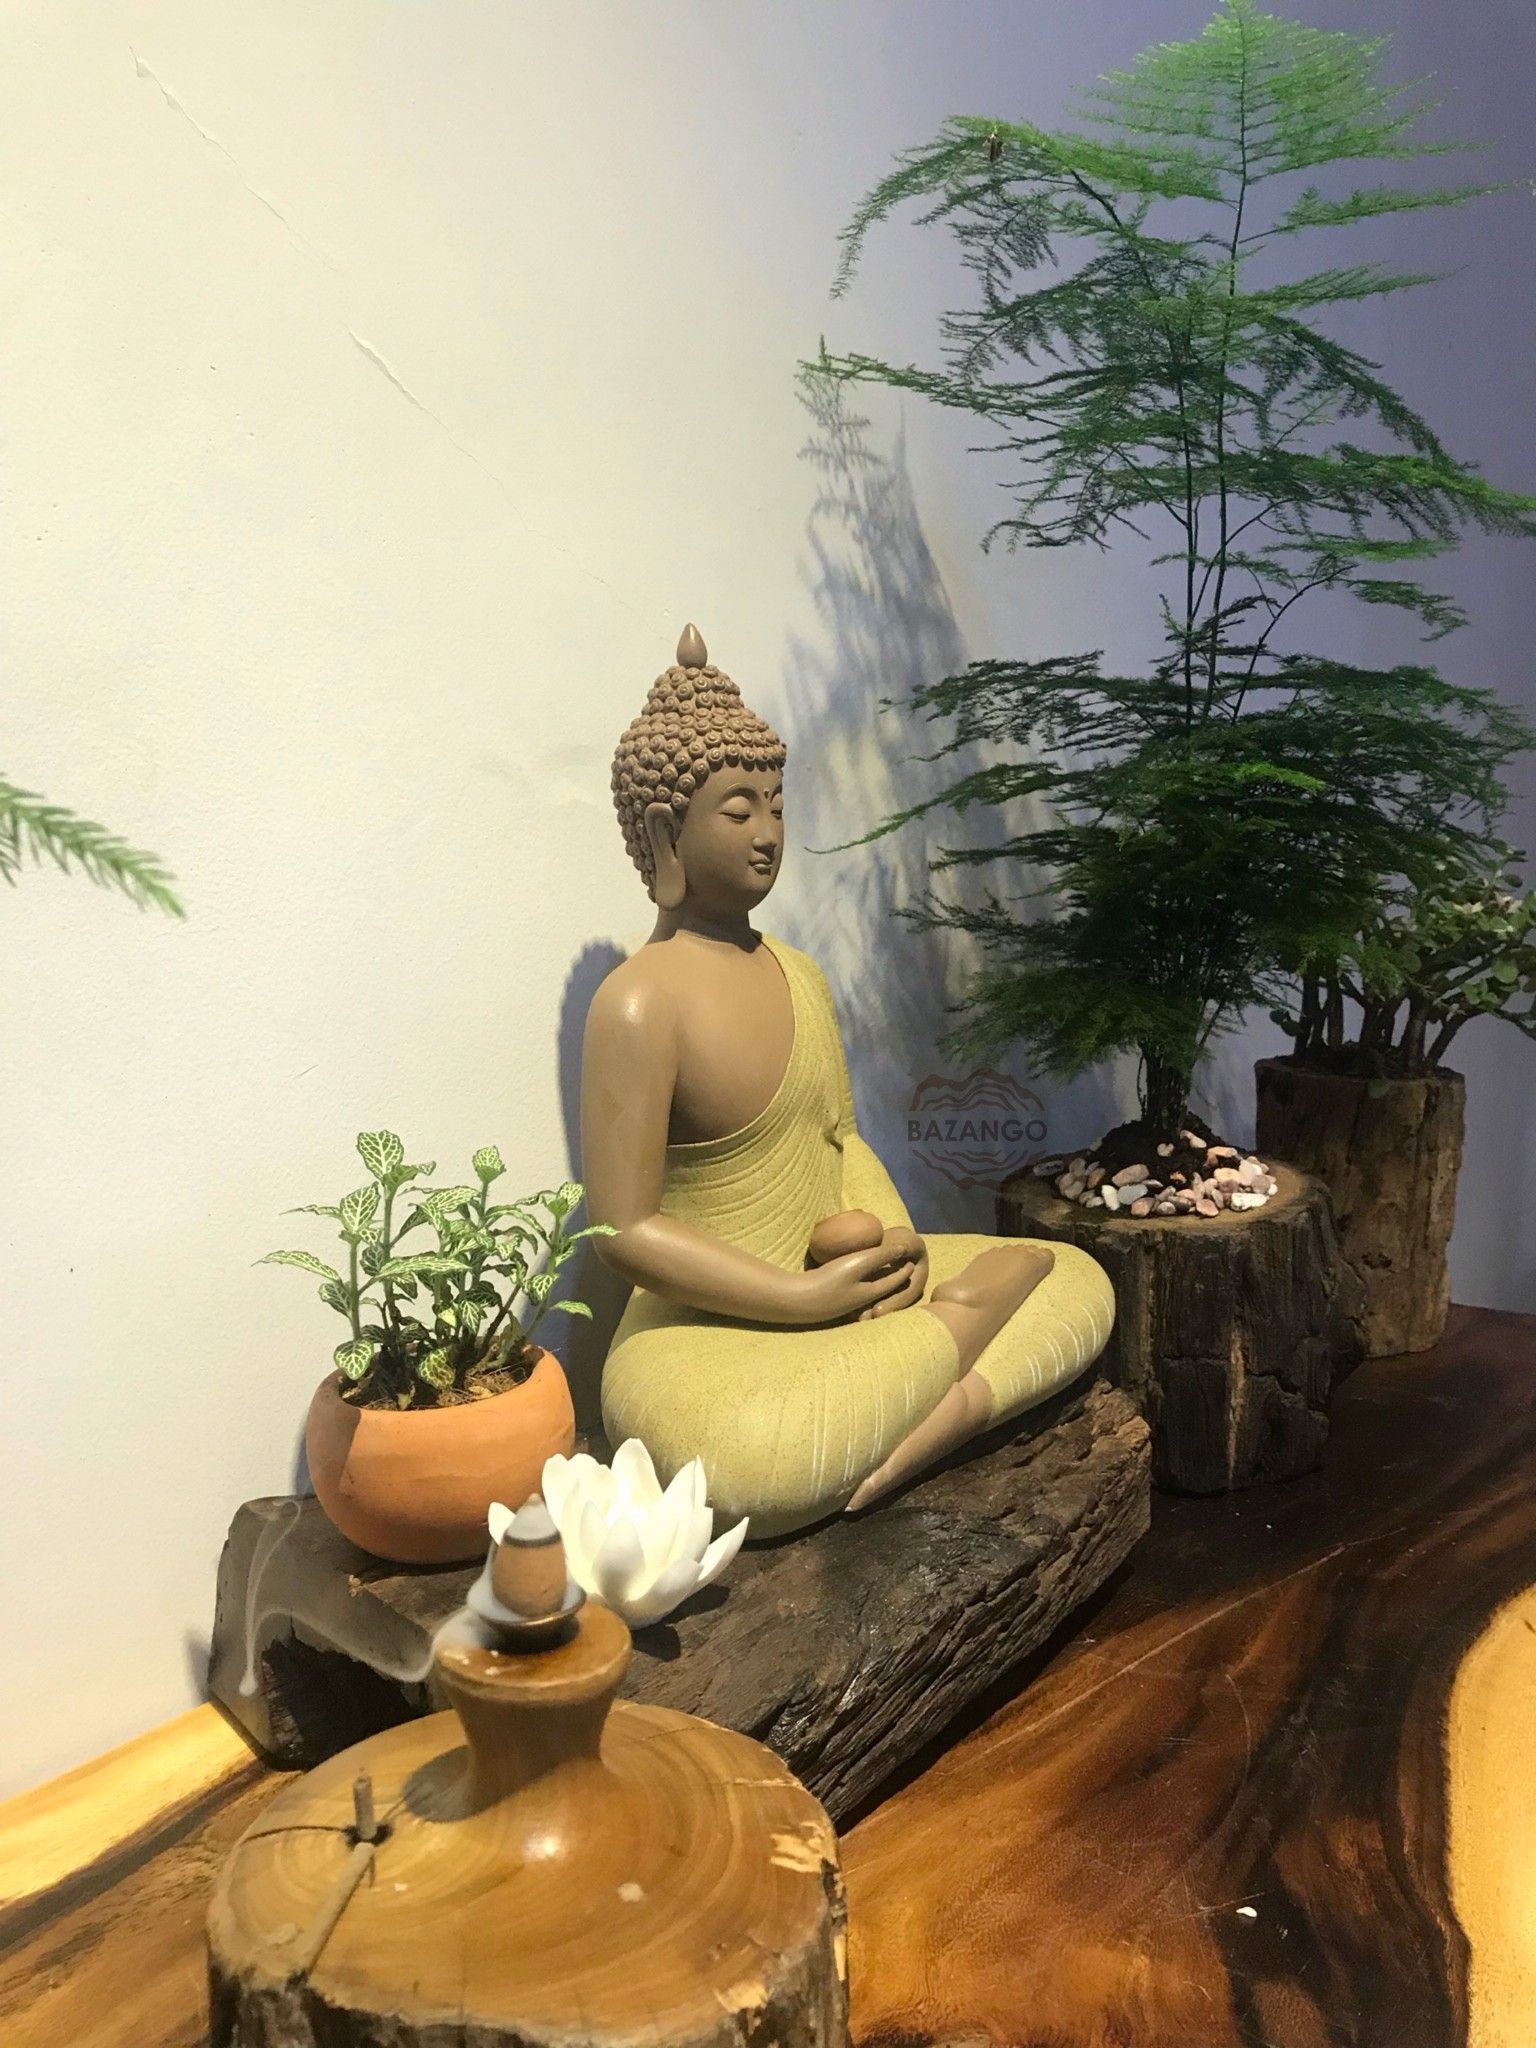 Bazango Outlet bàn thờ Phật dược sư: Bazango Outlet là cửa hàng chuyên cung cấp các sản phẩm Phật Giáo và chính thức là đối tác của cộng đồng Phật Giáo Việt Nam. Với bàn thờ Phật dược sư được trưng bày trong cửa hàng, Bazango Outlet đem đến cho khách hàng một trải nghiệm tuyệt vời và giúp họ tìm kiếm đúng sản phẩm Phật Giáo phù hợp với nhu cầu của mình.